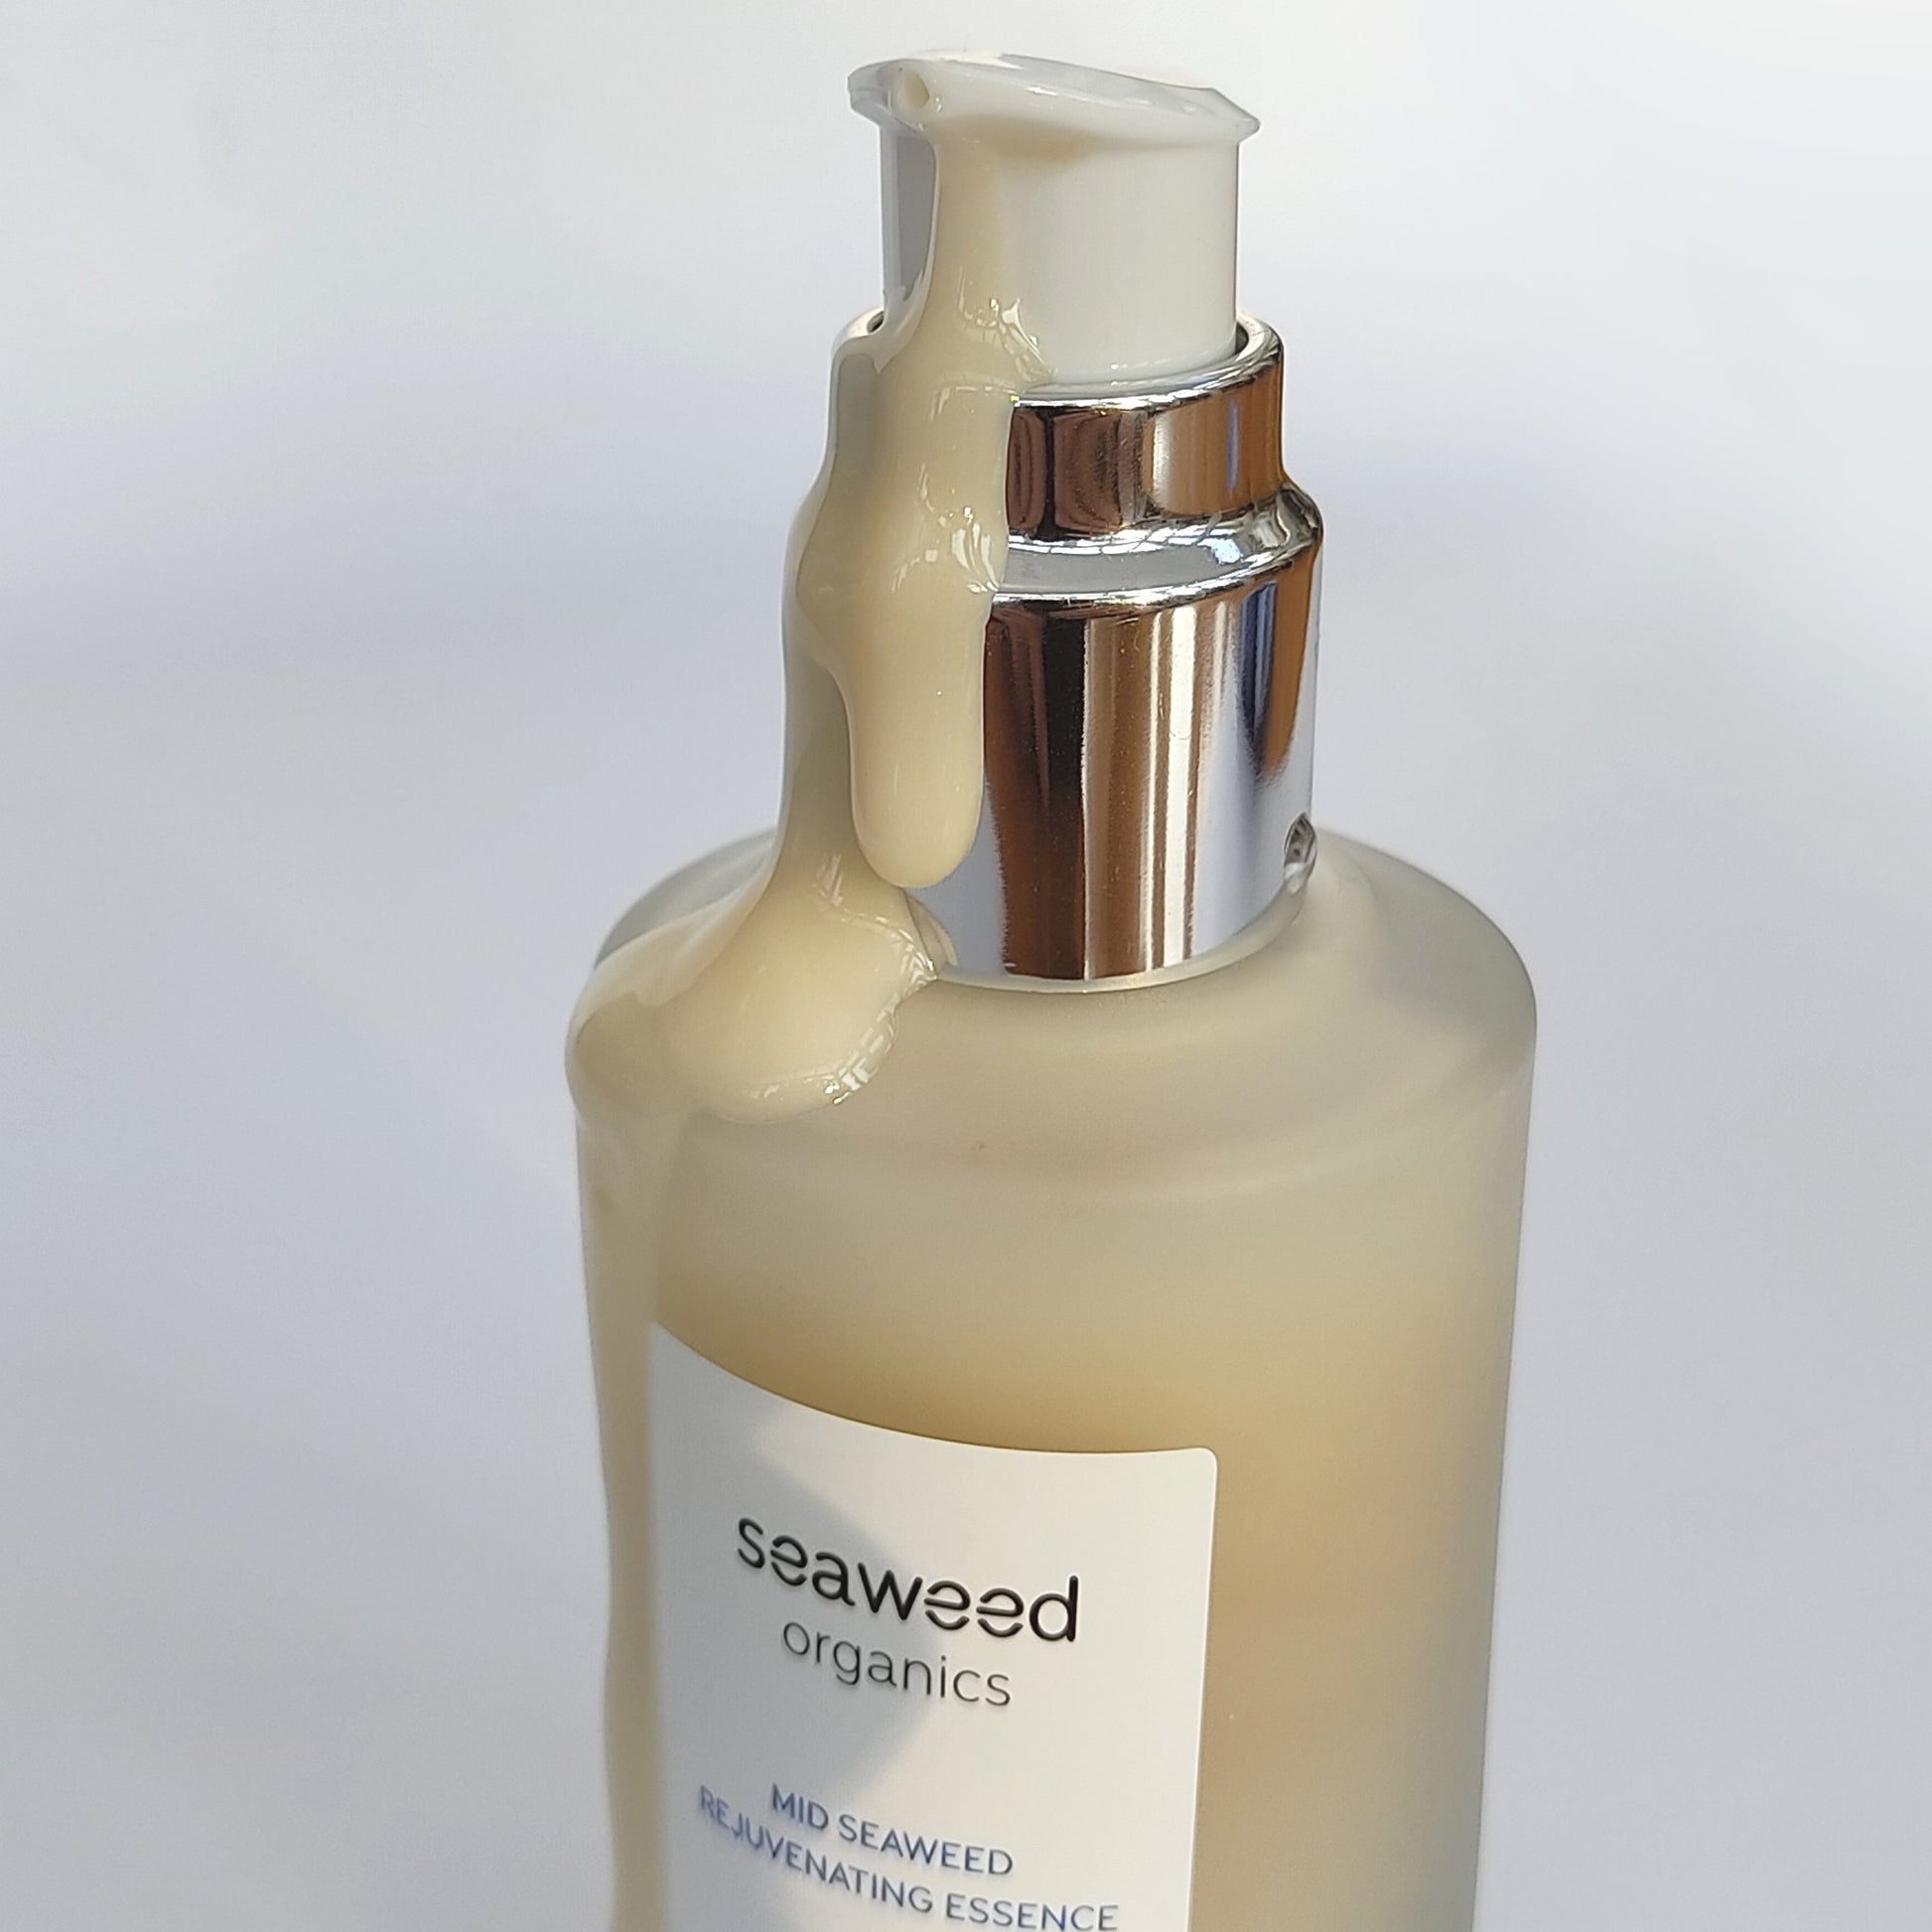 Mid Seaweed Rejuvenating Essence - Diana DrummondMid Seaweed Rejuvenating EssenceEssenceSEAWEED ORGANICSDiana Drummond